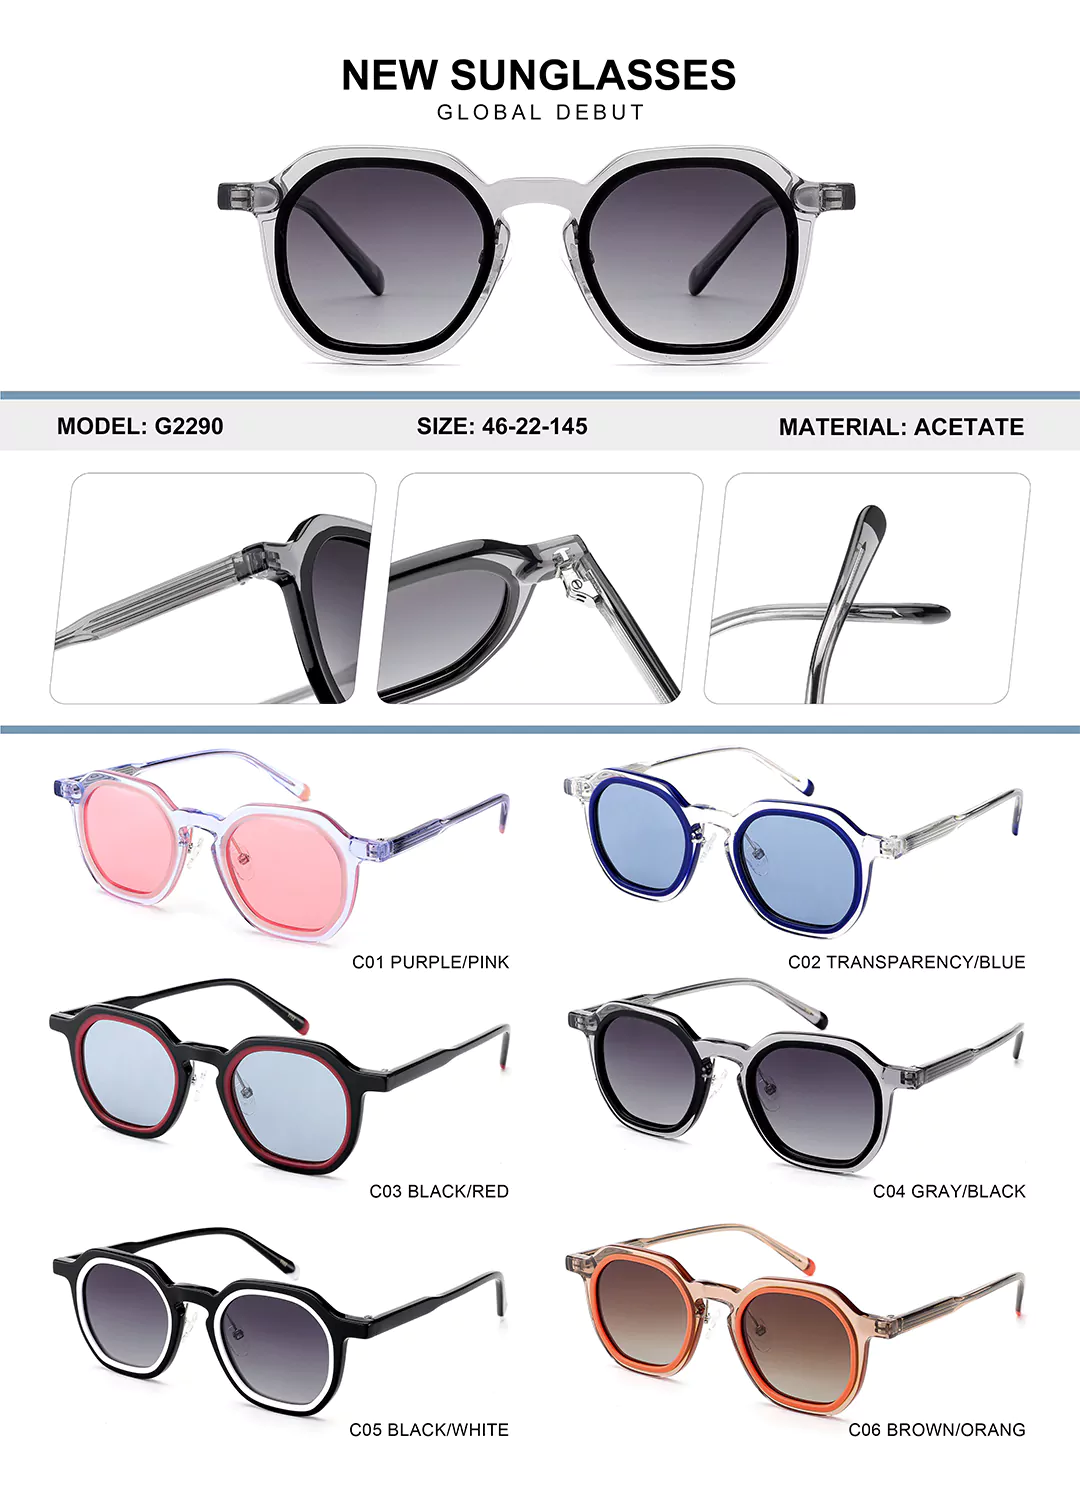 Kids Acetate Glasses G2289 Different colors shown, detail shots, size